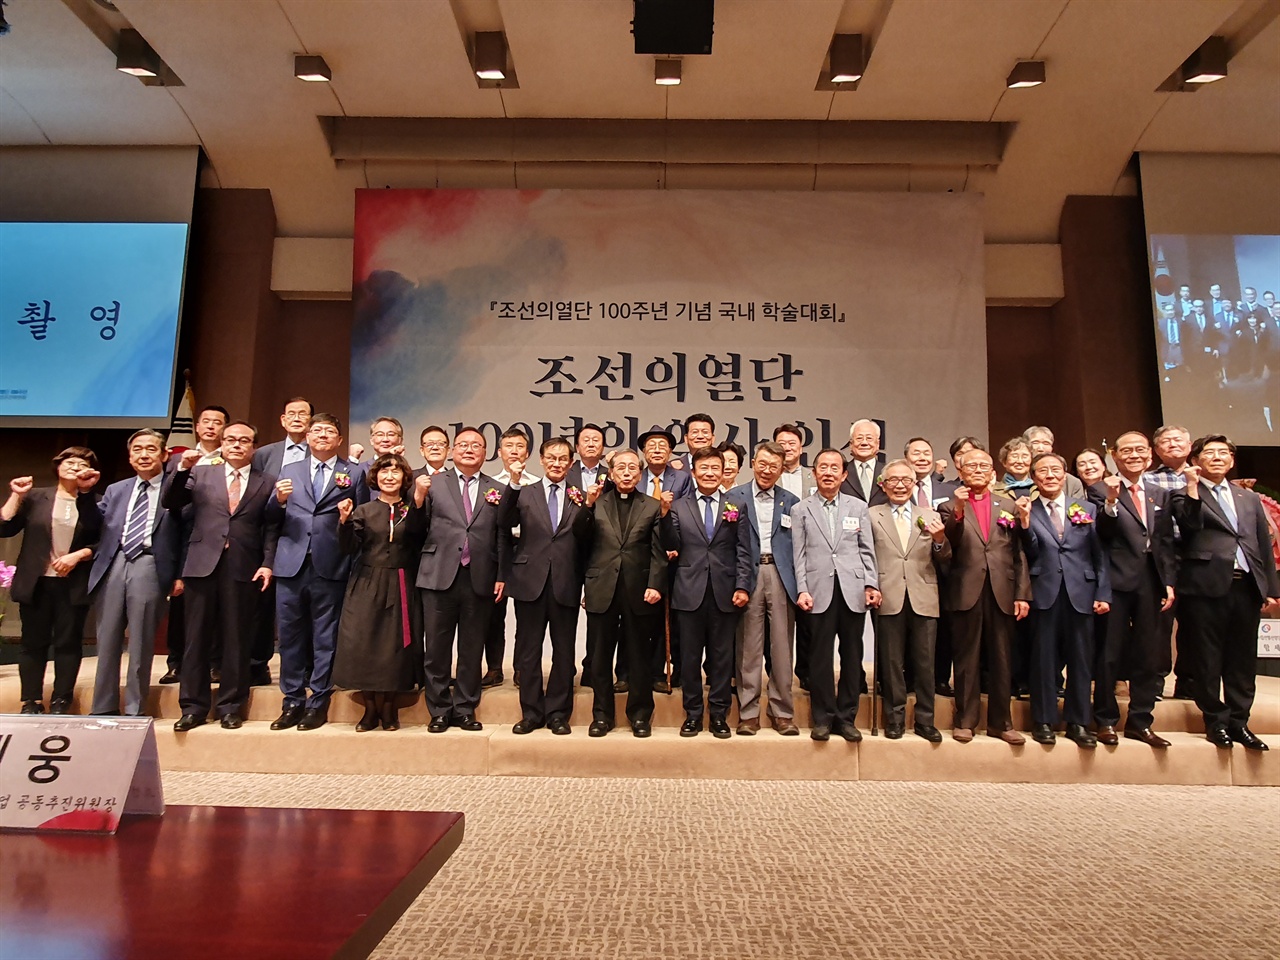 조선의열단 100주년 기념 학술대회 '조선의열단 100년의 역사인식'에 참석한 내외귀빈들의 모습